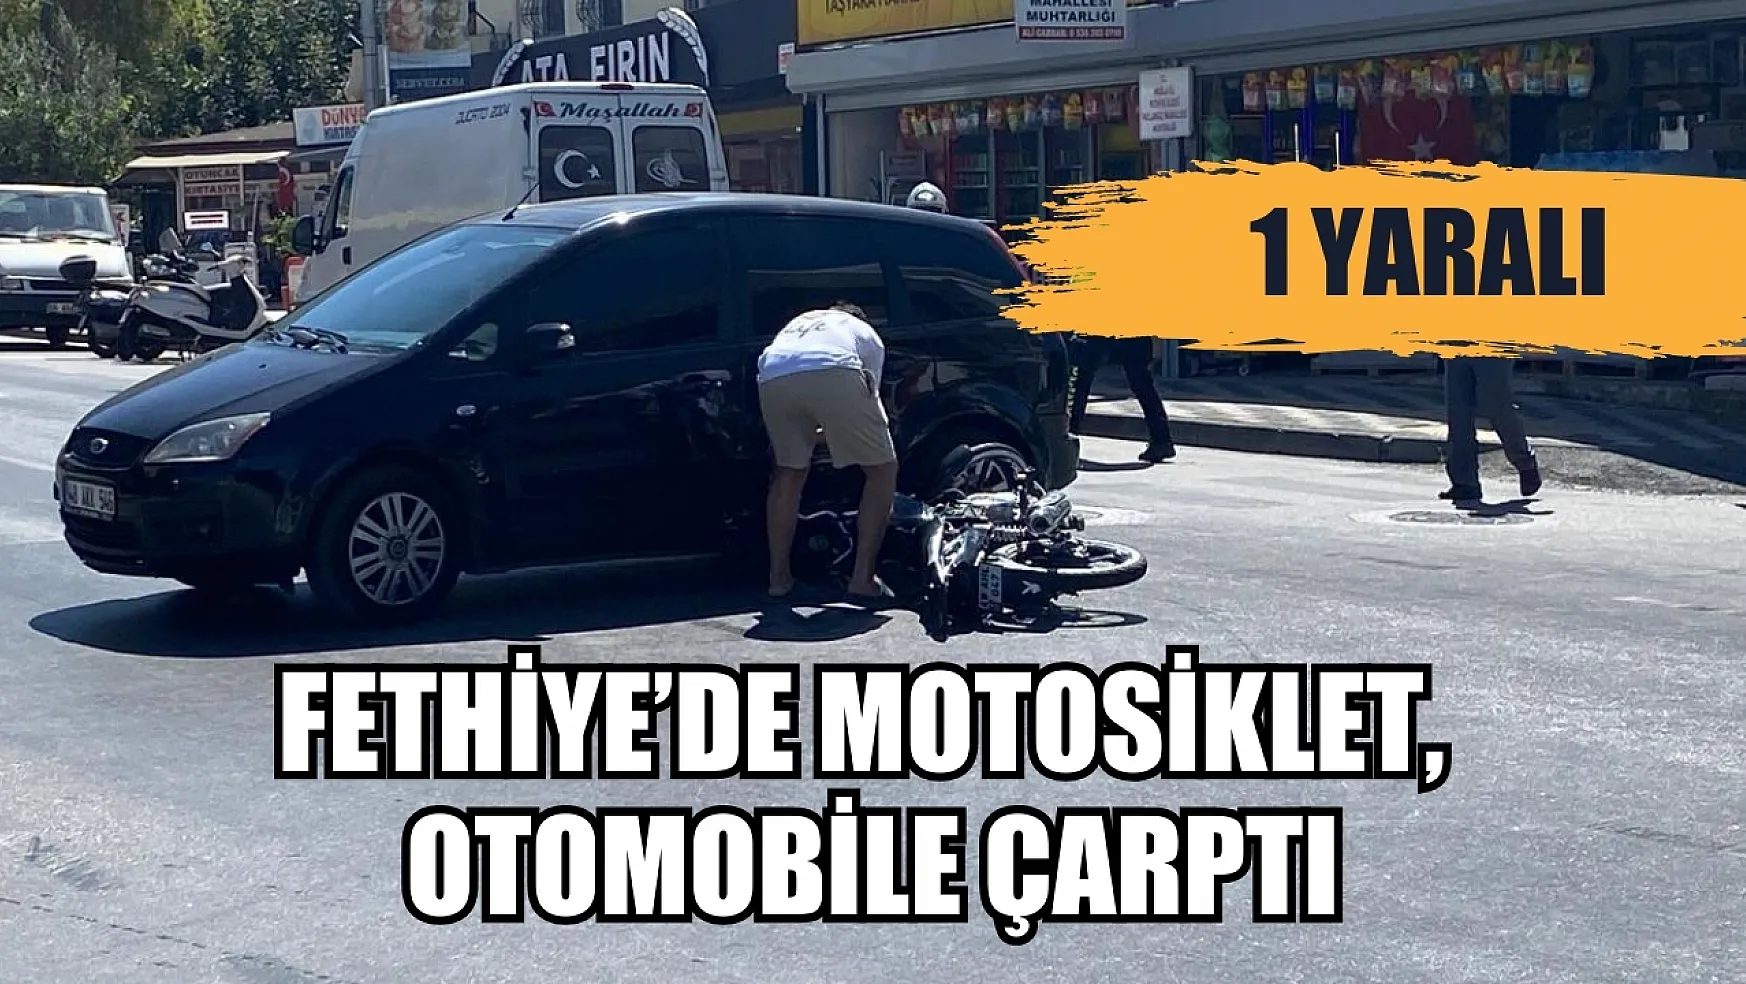 Fethiye'de motosiklet, otomobile çarptı 1 yaralı